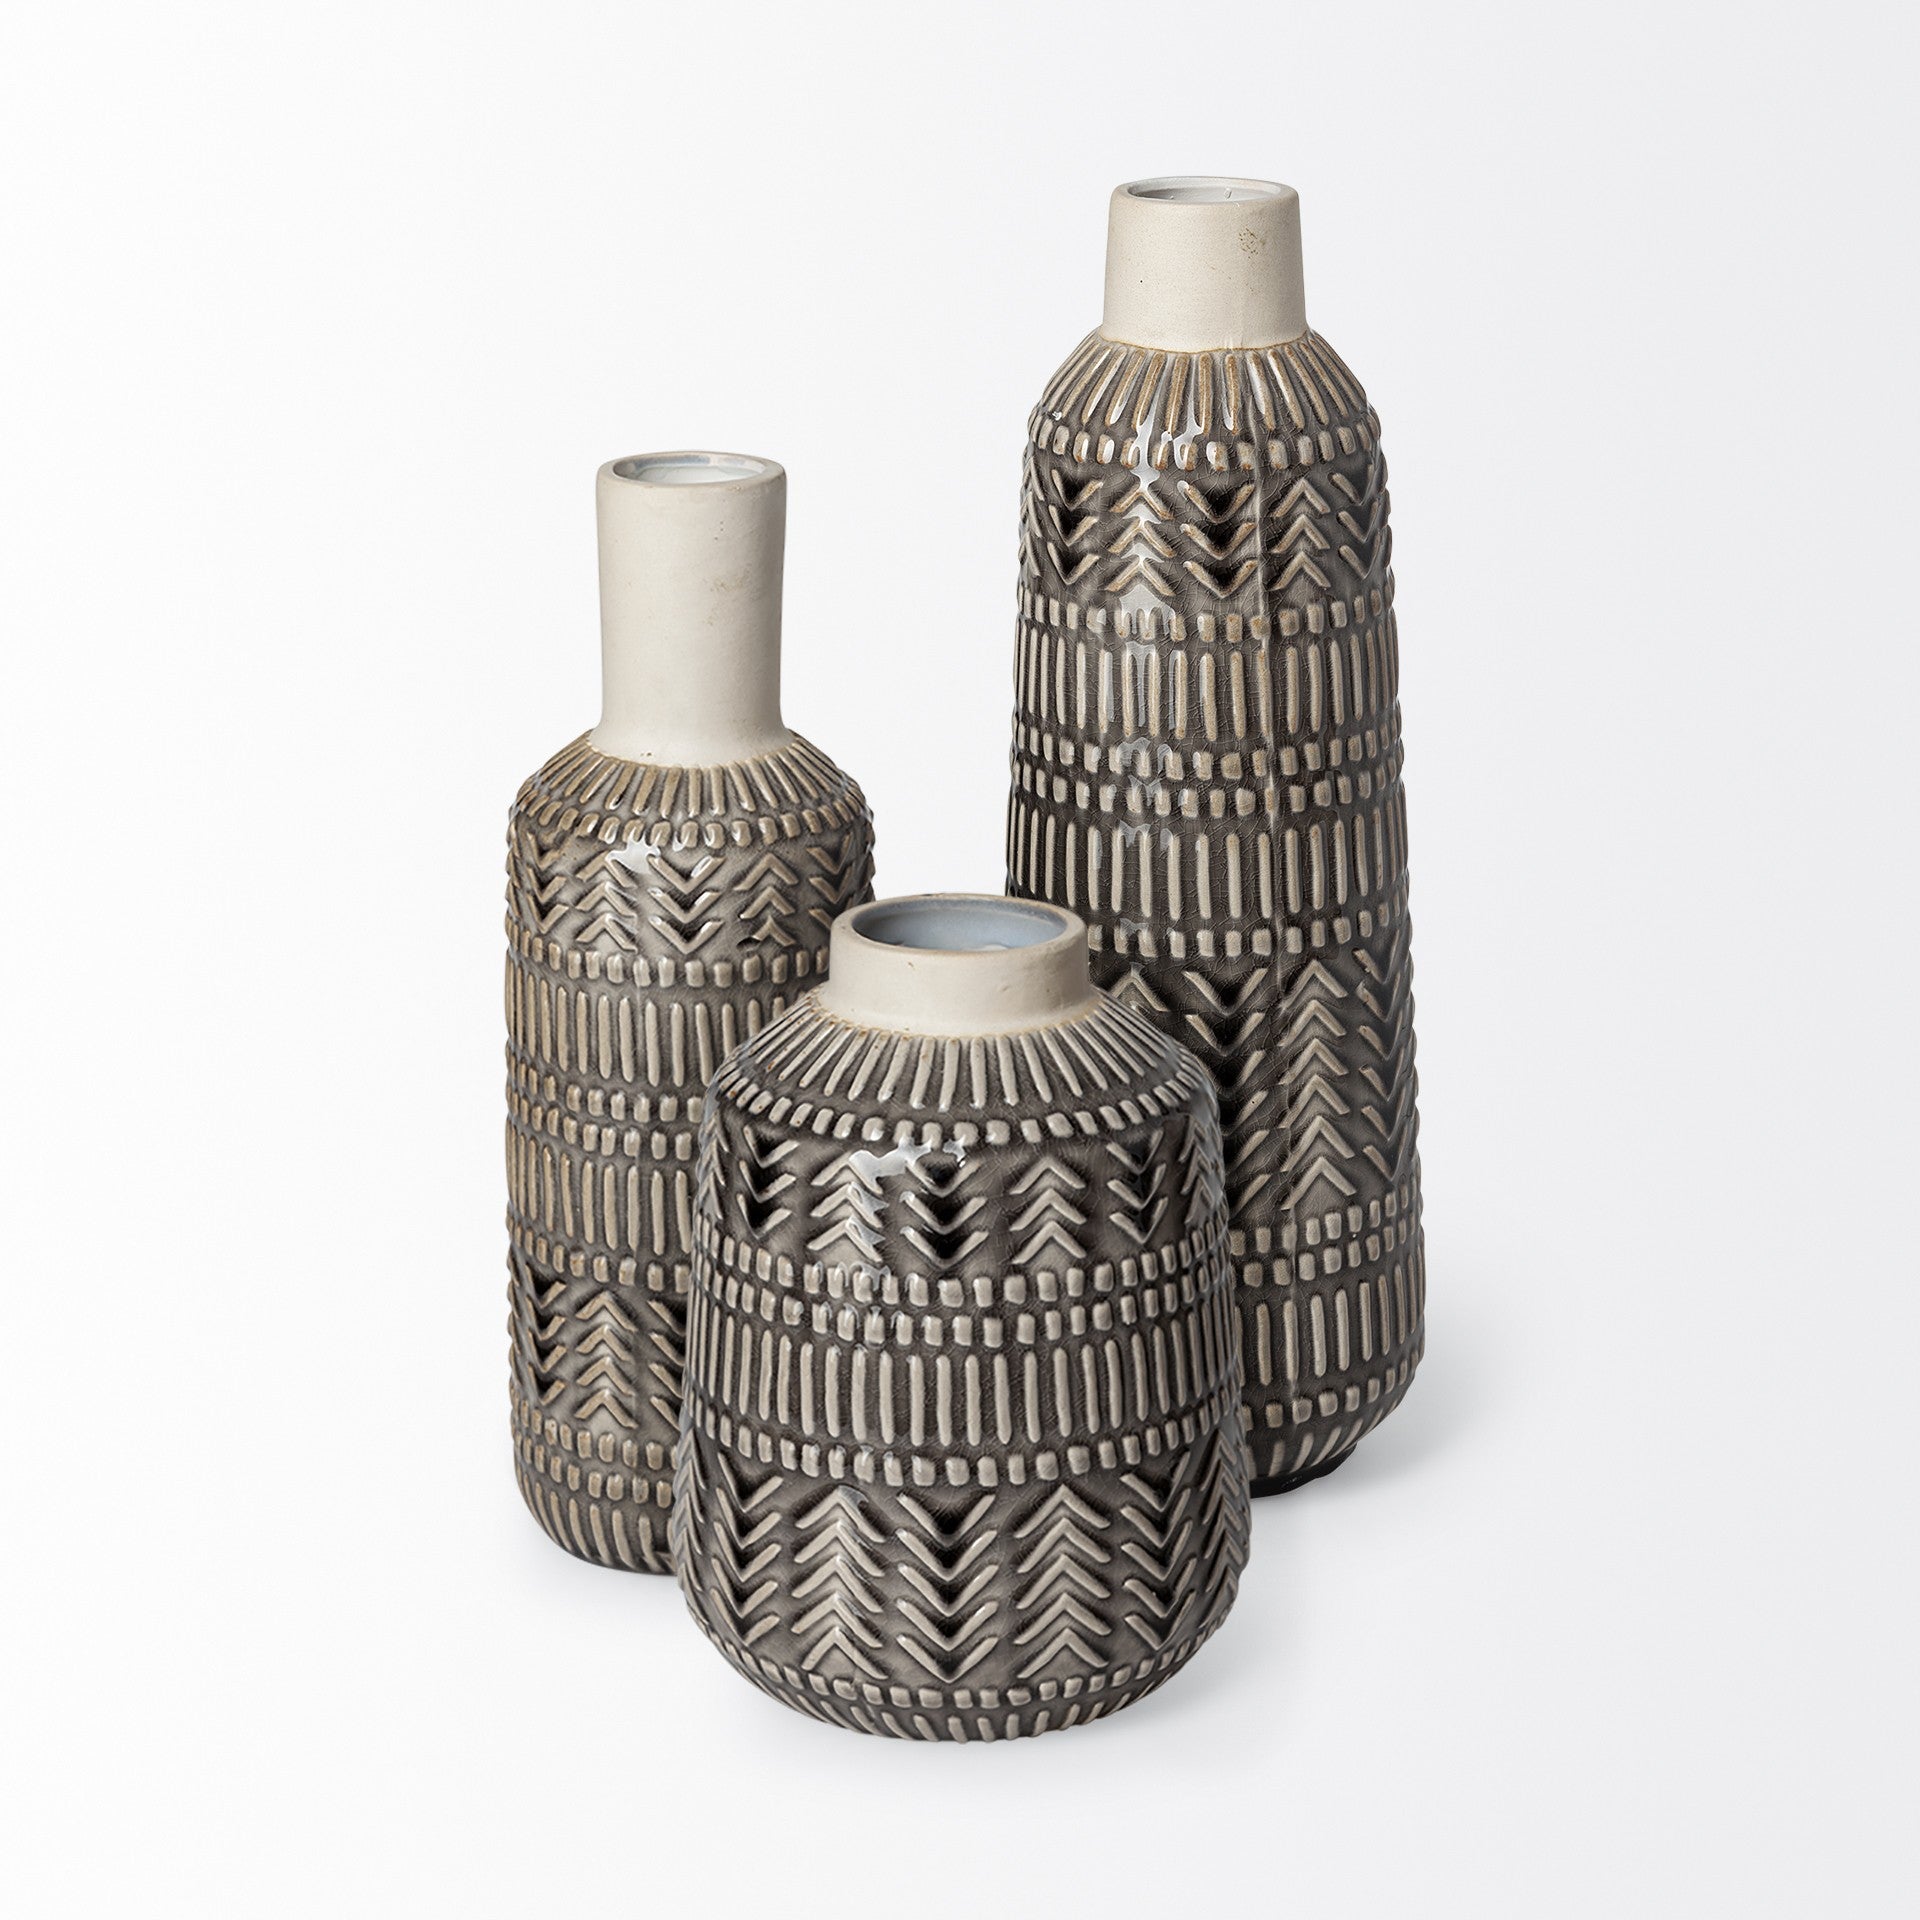 8" Black and Cream Organic Glaze Chevron Embossed Ceramic Vase